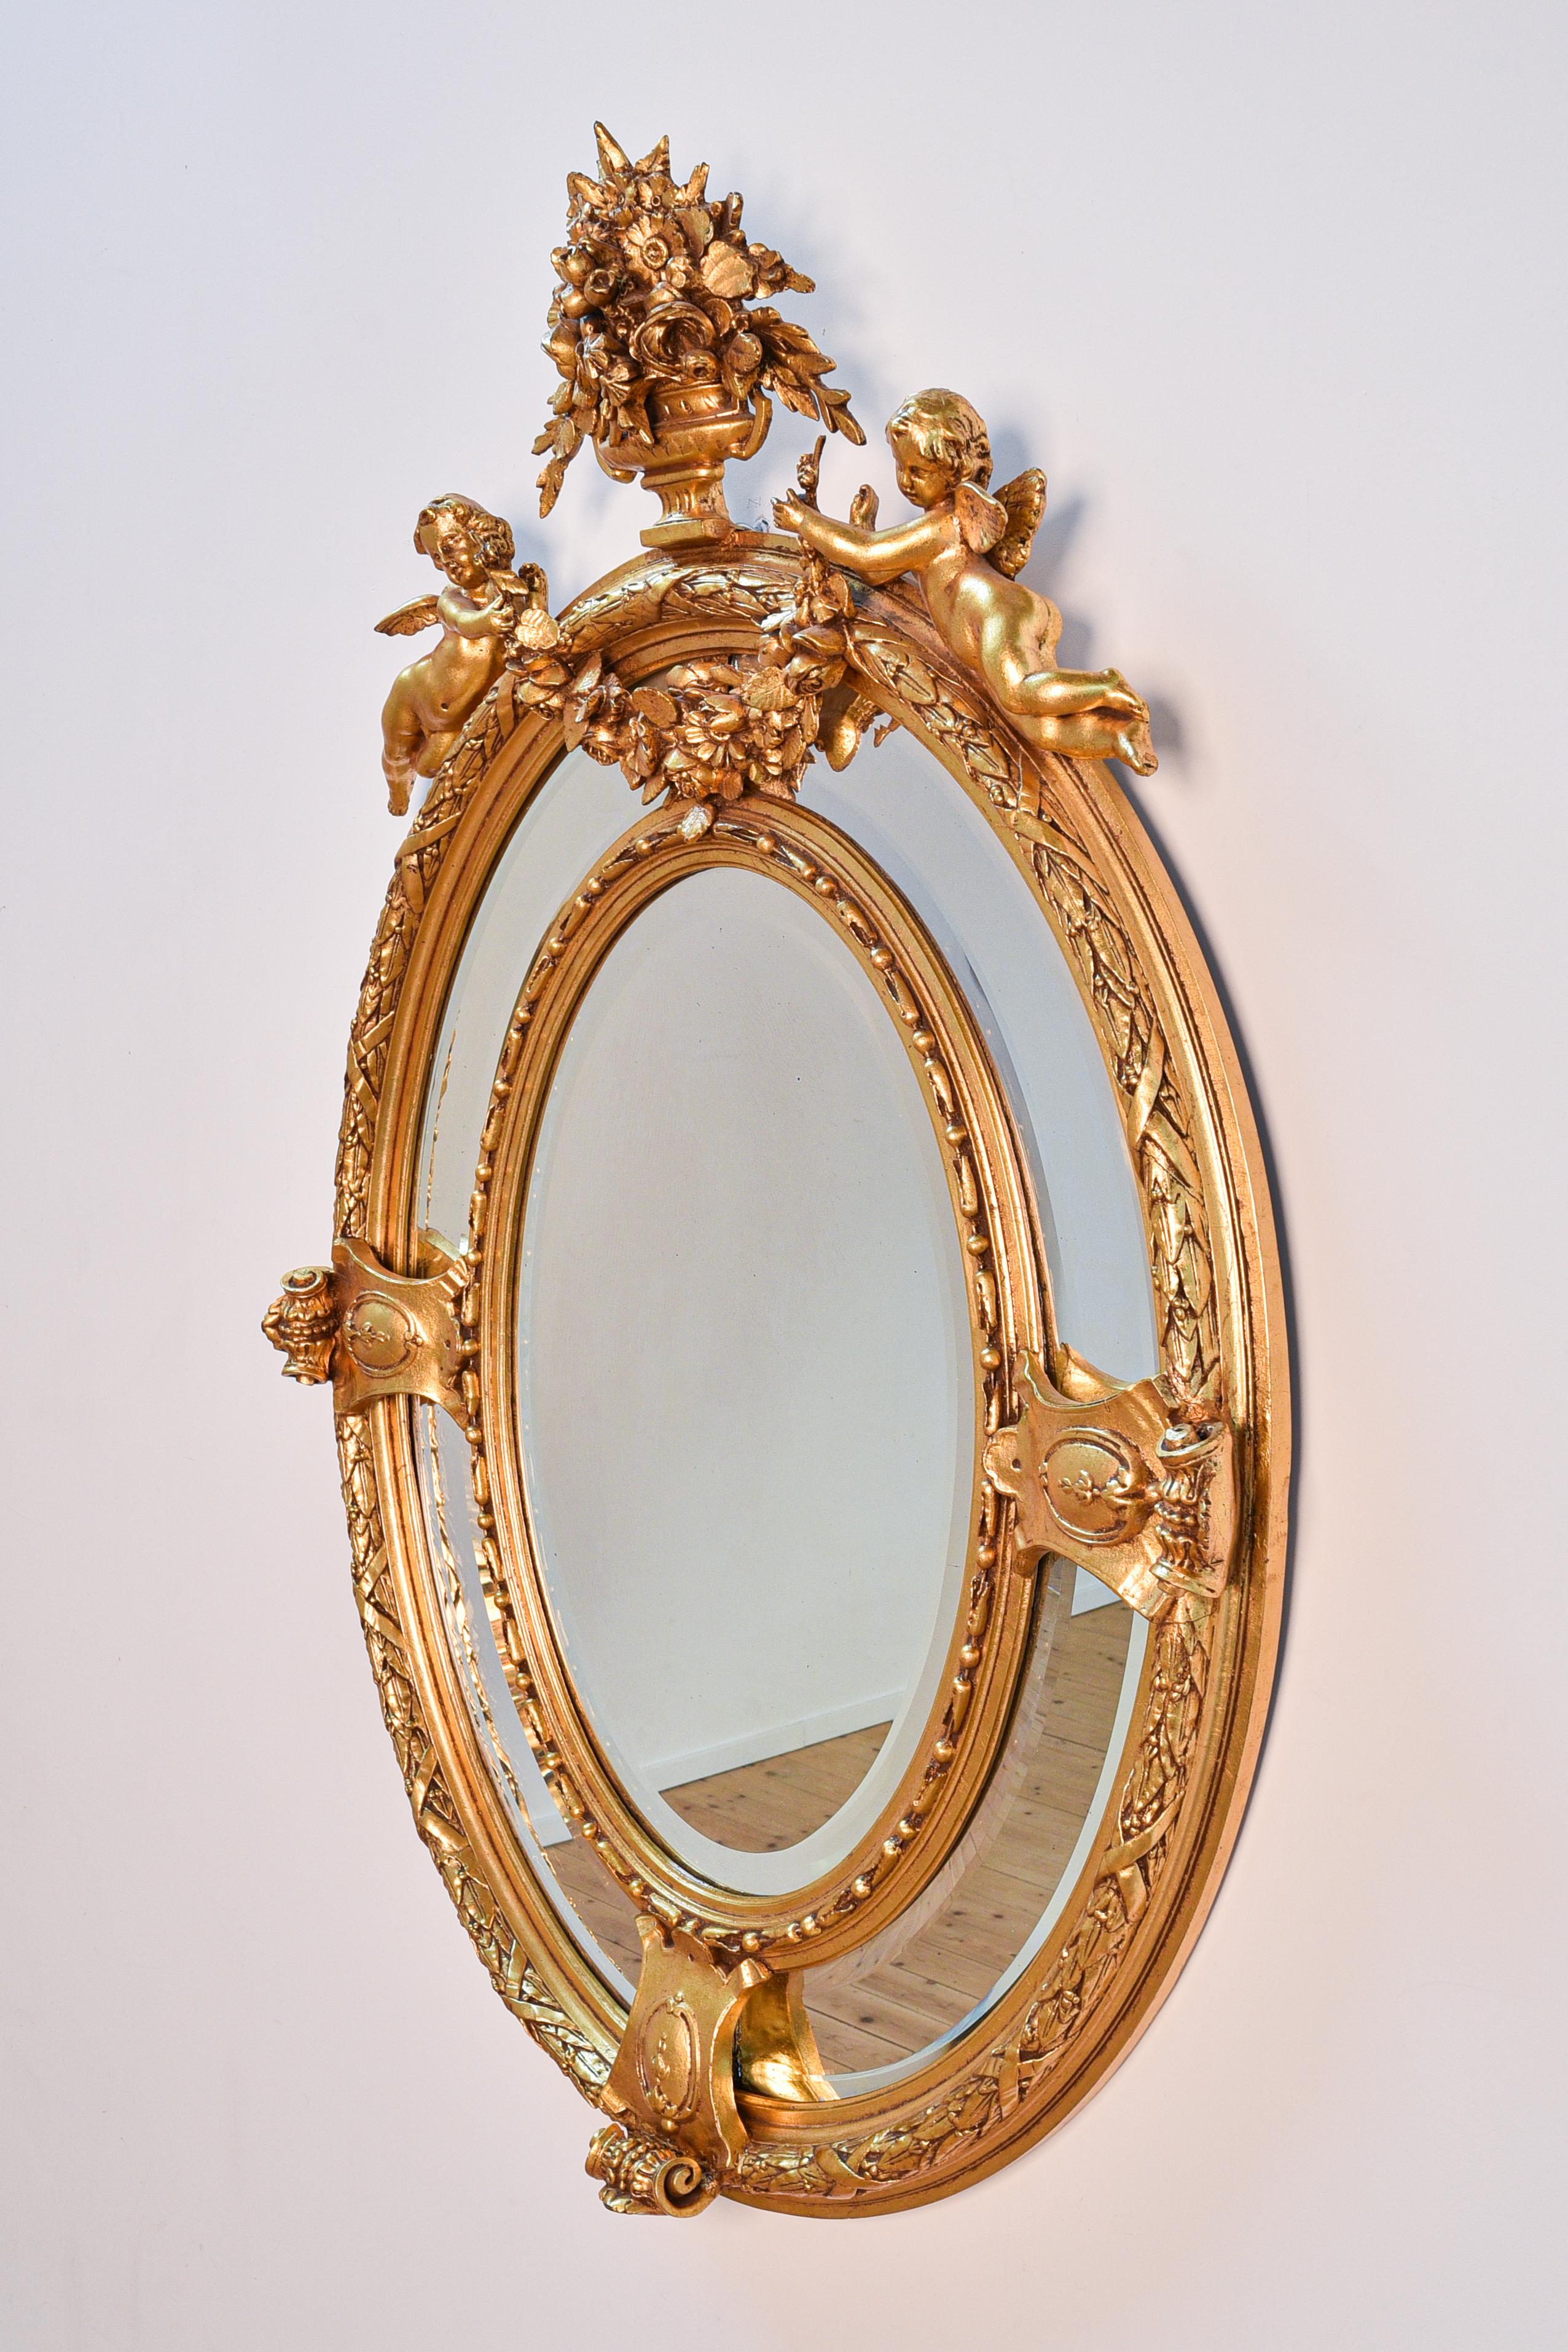 Miroir girandole baroque italien de la fin du XIXe siècle avec cadre en bois, décoré d'anges et d'éléments floraux, verre taillé. 